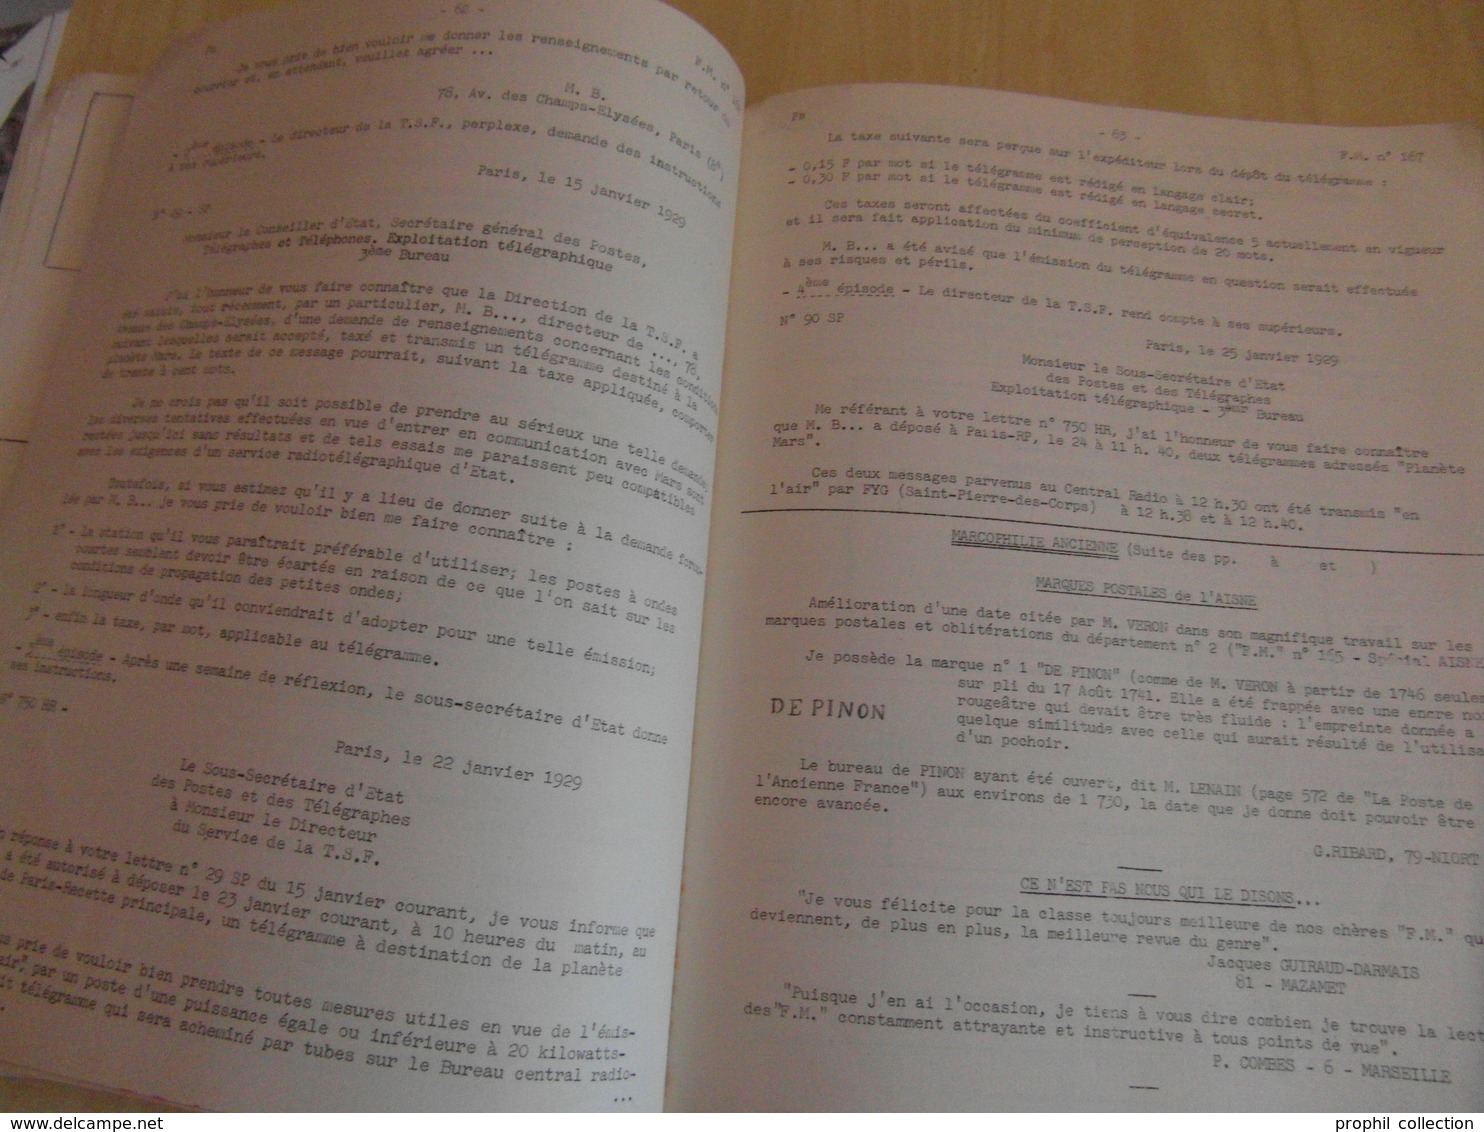 LES FEUILLES MARCOPHILES N° 167 (DECEMBRE 1965 / 120 PAGES / PLUSIEURS PHOTOS) - BULLETIN DE L'UNION MARCOPHILE - Philately And Postal History